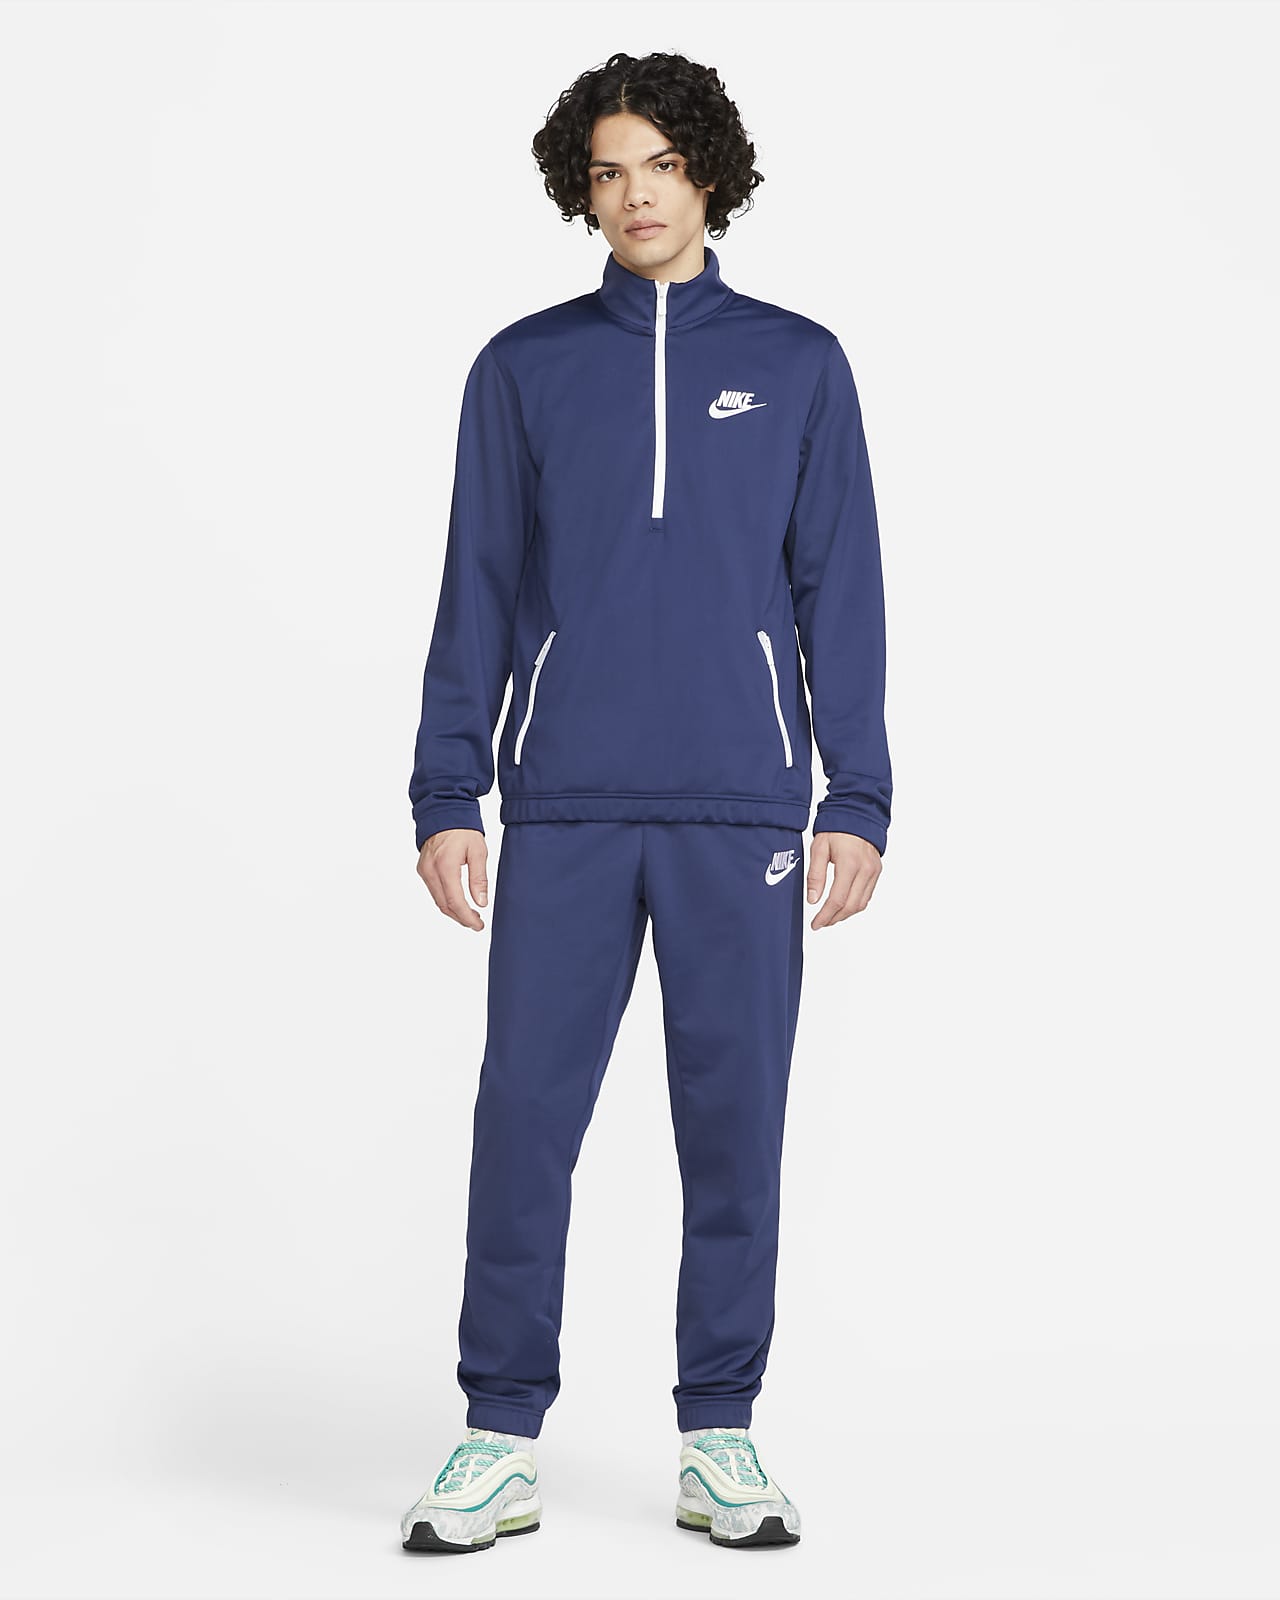 Survêtement Nike Sportswear Homme : : Mode